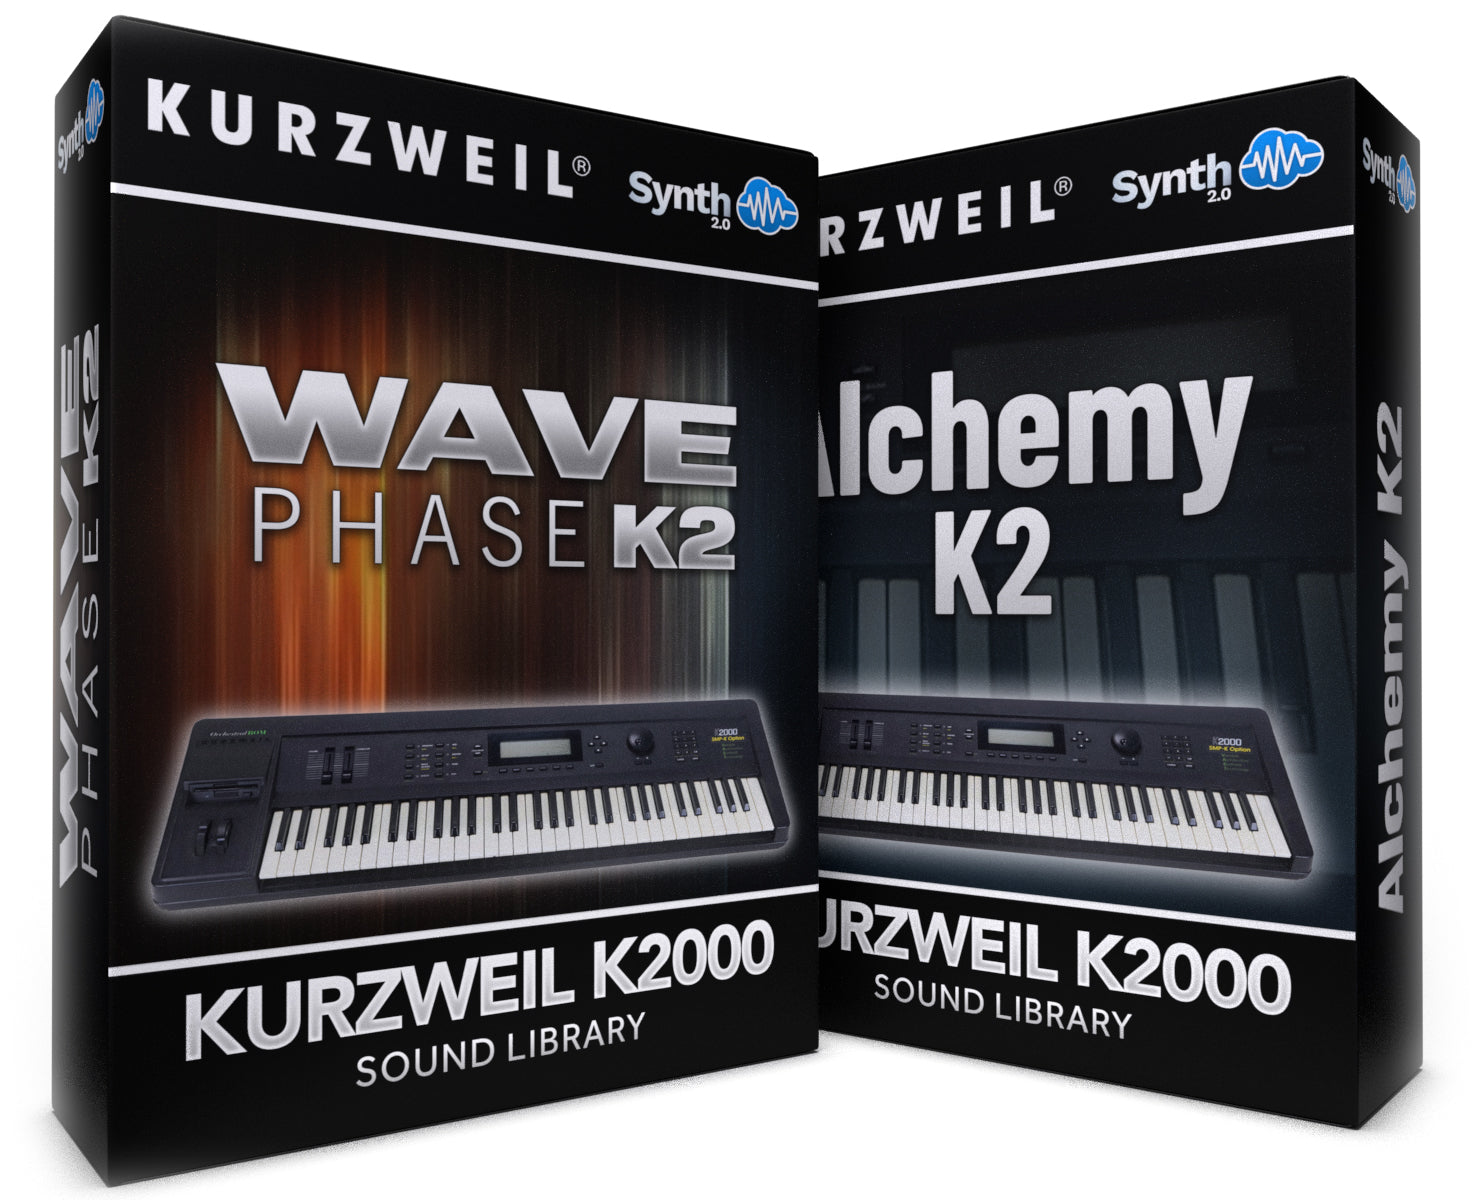 TPL040 - ( Bundle ) - Wave Phase K2 + Alchemy K2 - Kurzweil K2000